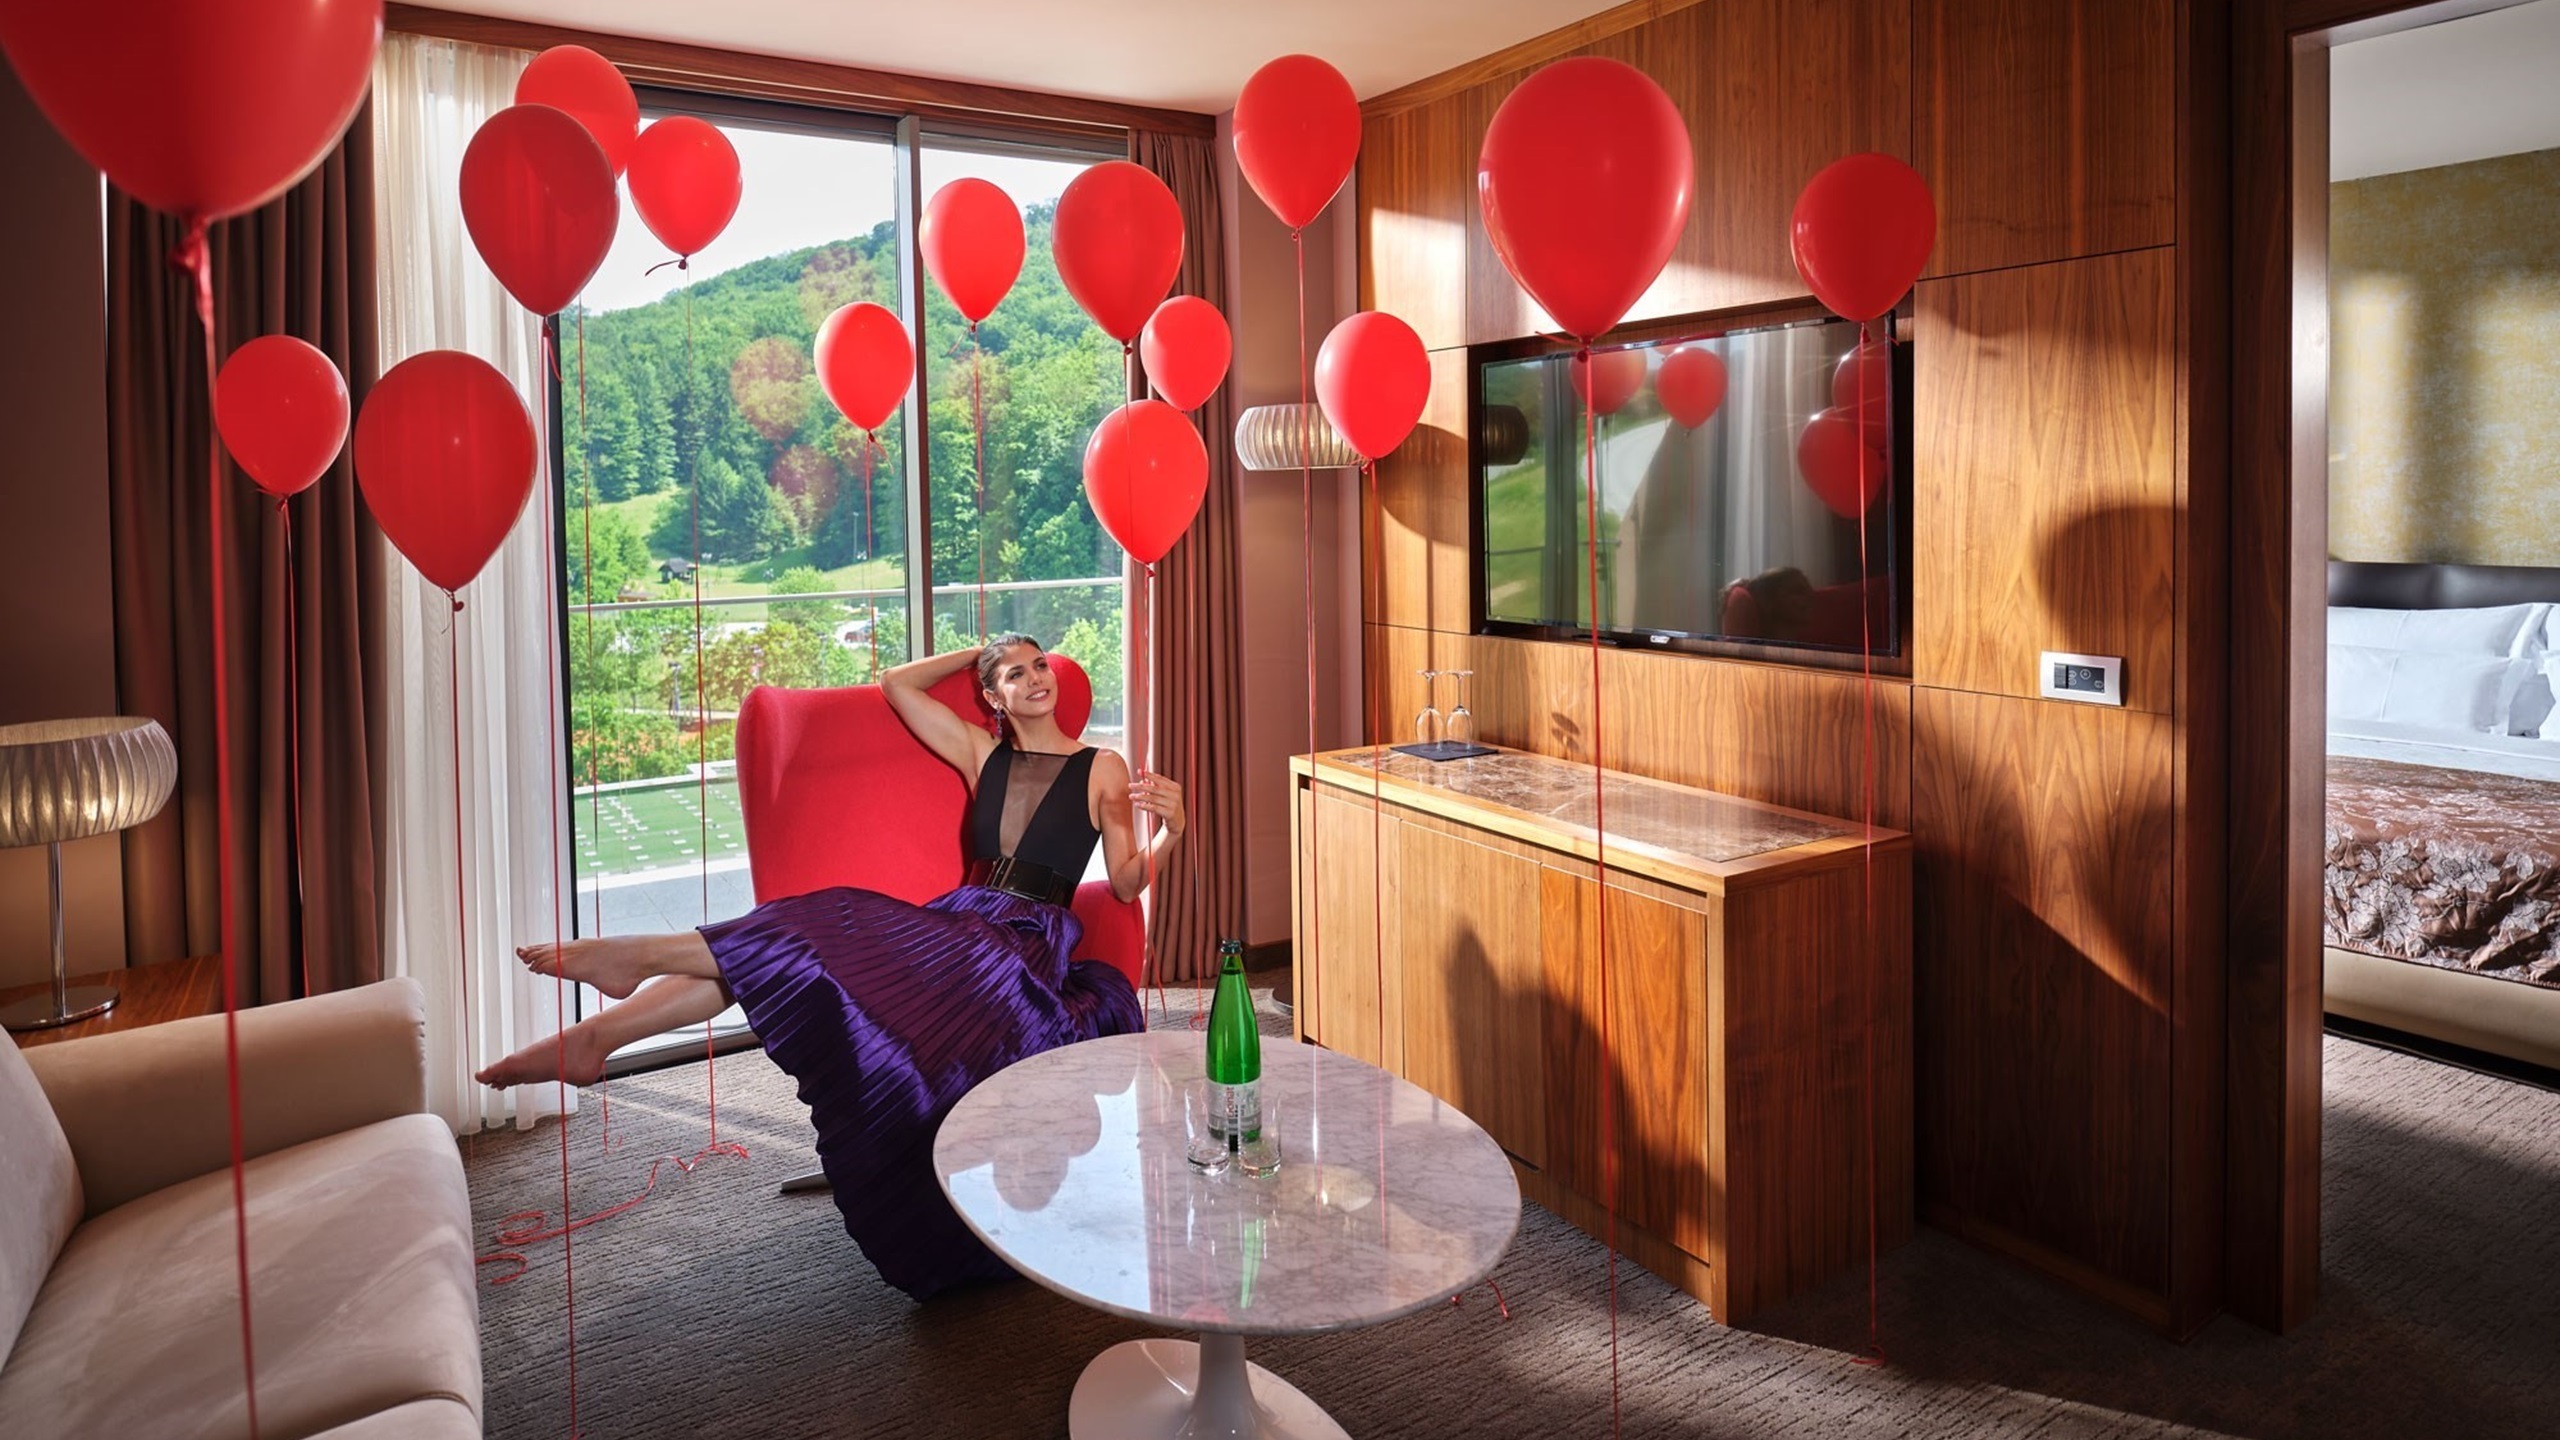 Frau im Zimmer mit roten Luftballons